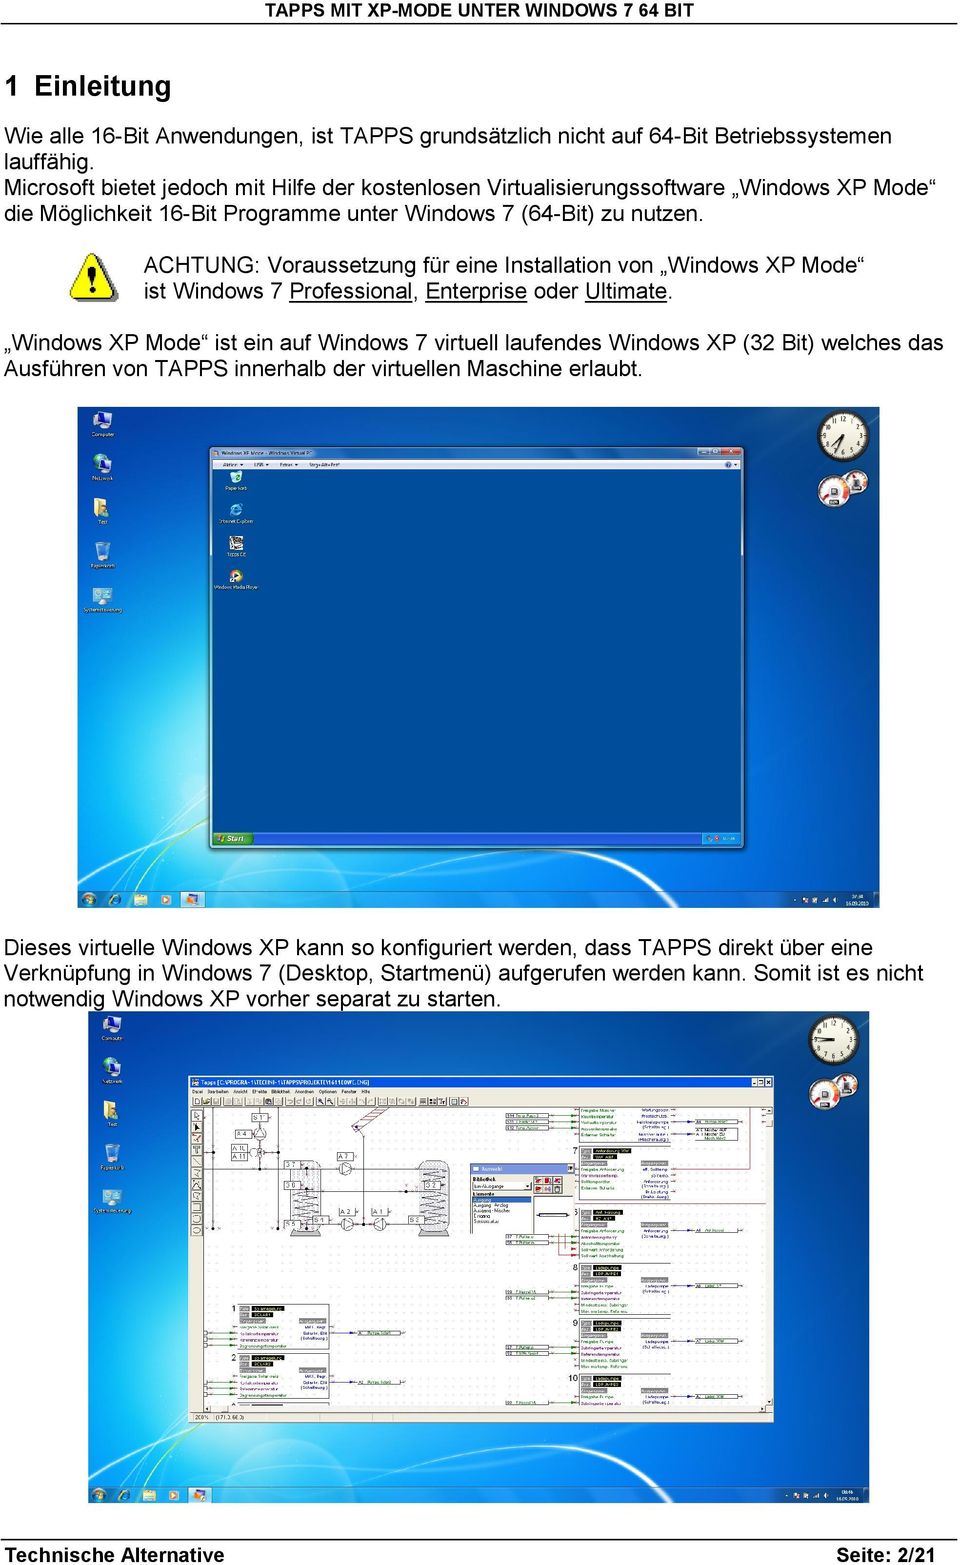 ACHTUNG: Voraussetzung für eine Installation von Windows XP Mode ist Windows 7 Professional, Enterprise oder Ultimate.